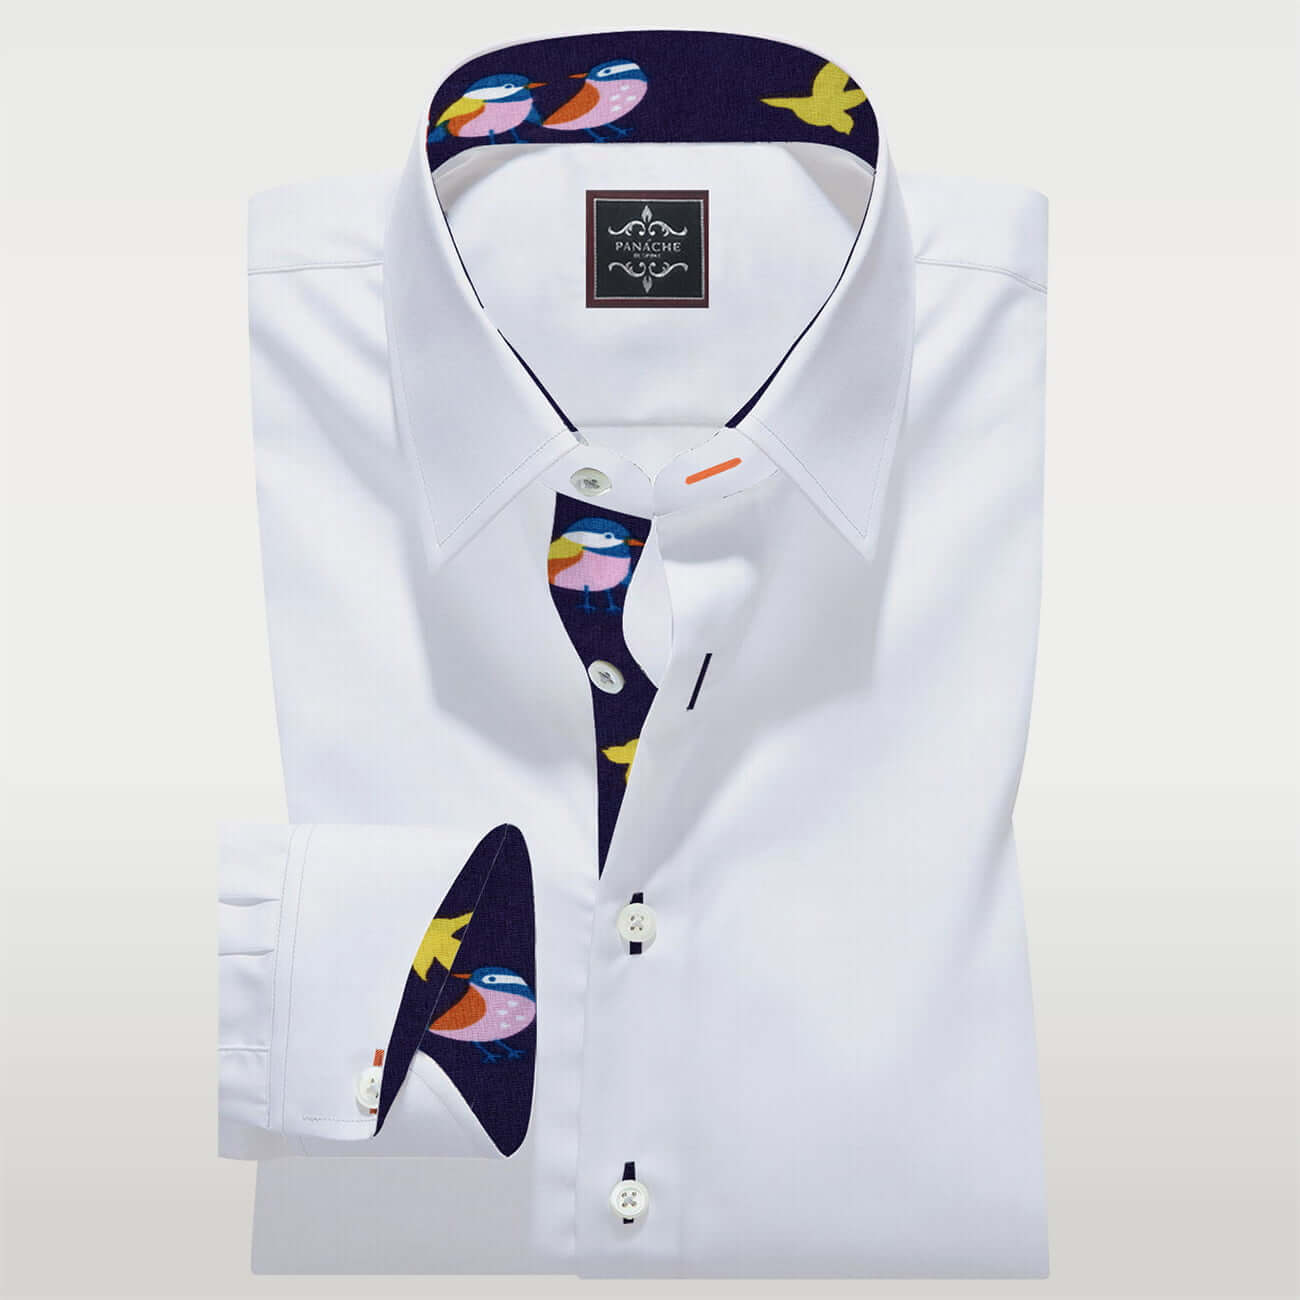 White Poplin Custom Made Shirt. Men's dress shirts